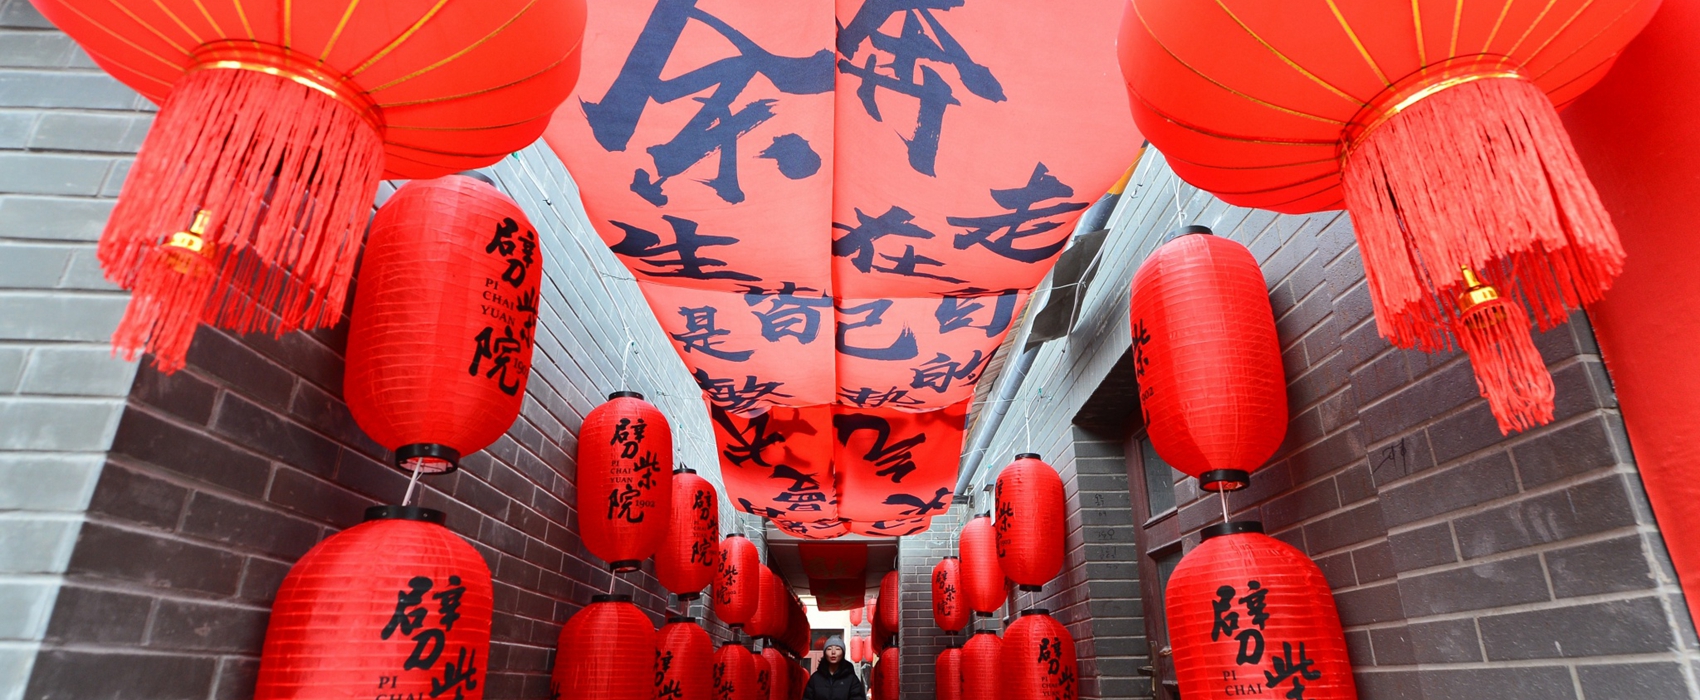 Celebrate Chinese New Year – Shinan style